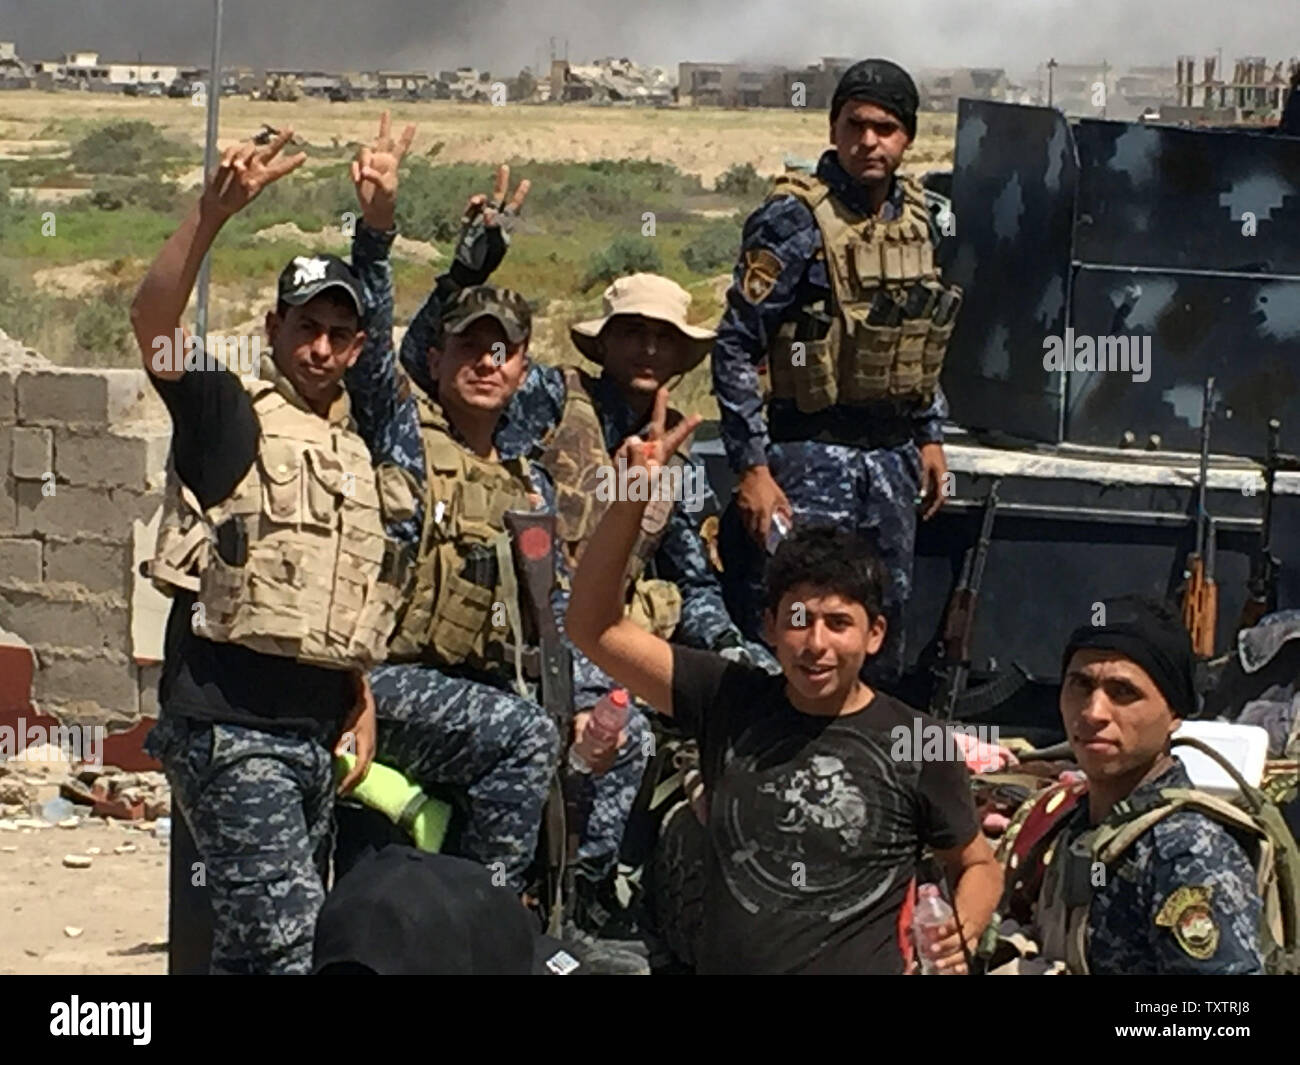 Los soldados de las fuerzas del gobierno iraquí flash signos victoria en Faluya Shuhada meridional del barrio durante una operación para retomar las áreas desde el Estado Islámico (ES) grupo, al oeste de Bagdad en Irak el 15 de junio de 2016. Las fuerzas iraquíes lanzaron una vasta ofensiva hace más de tres semanas para retomar Faluya, que se encuentra a sólo 50 km (30 millas) al oeste de Bagdad, y es uno de los principales bastiones de los jihadistas. Foto por Abbas Mohammed /UPI Foto de stock